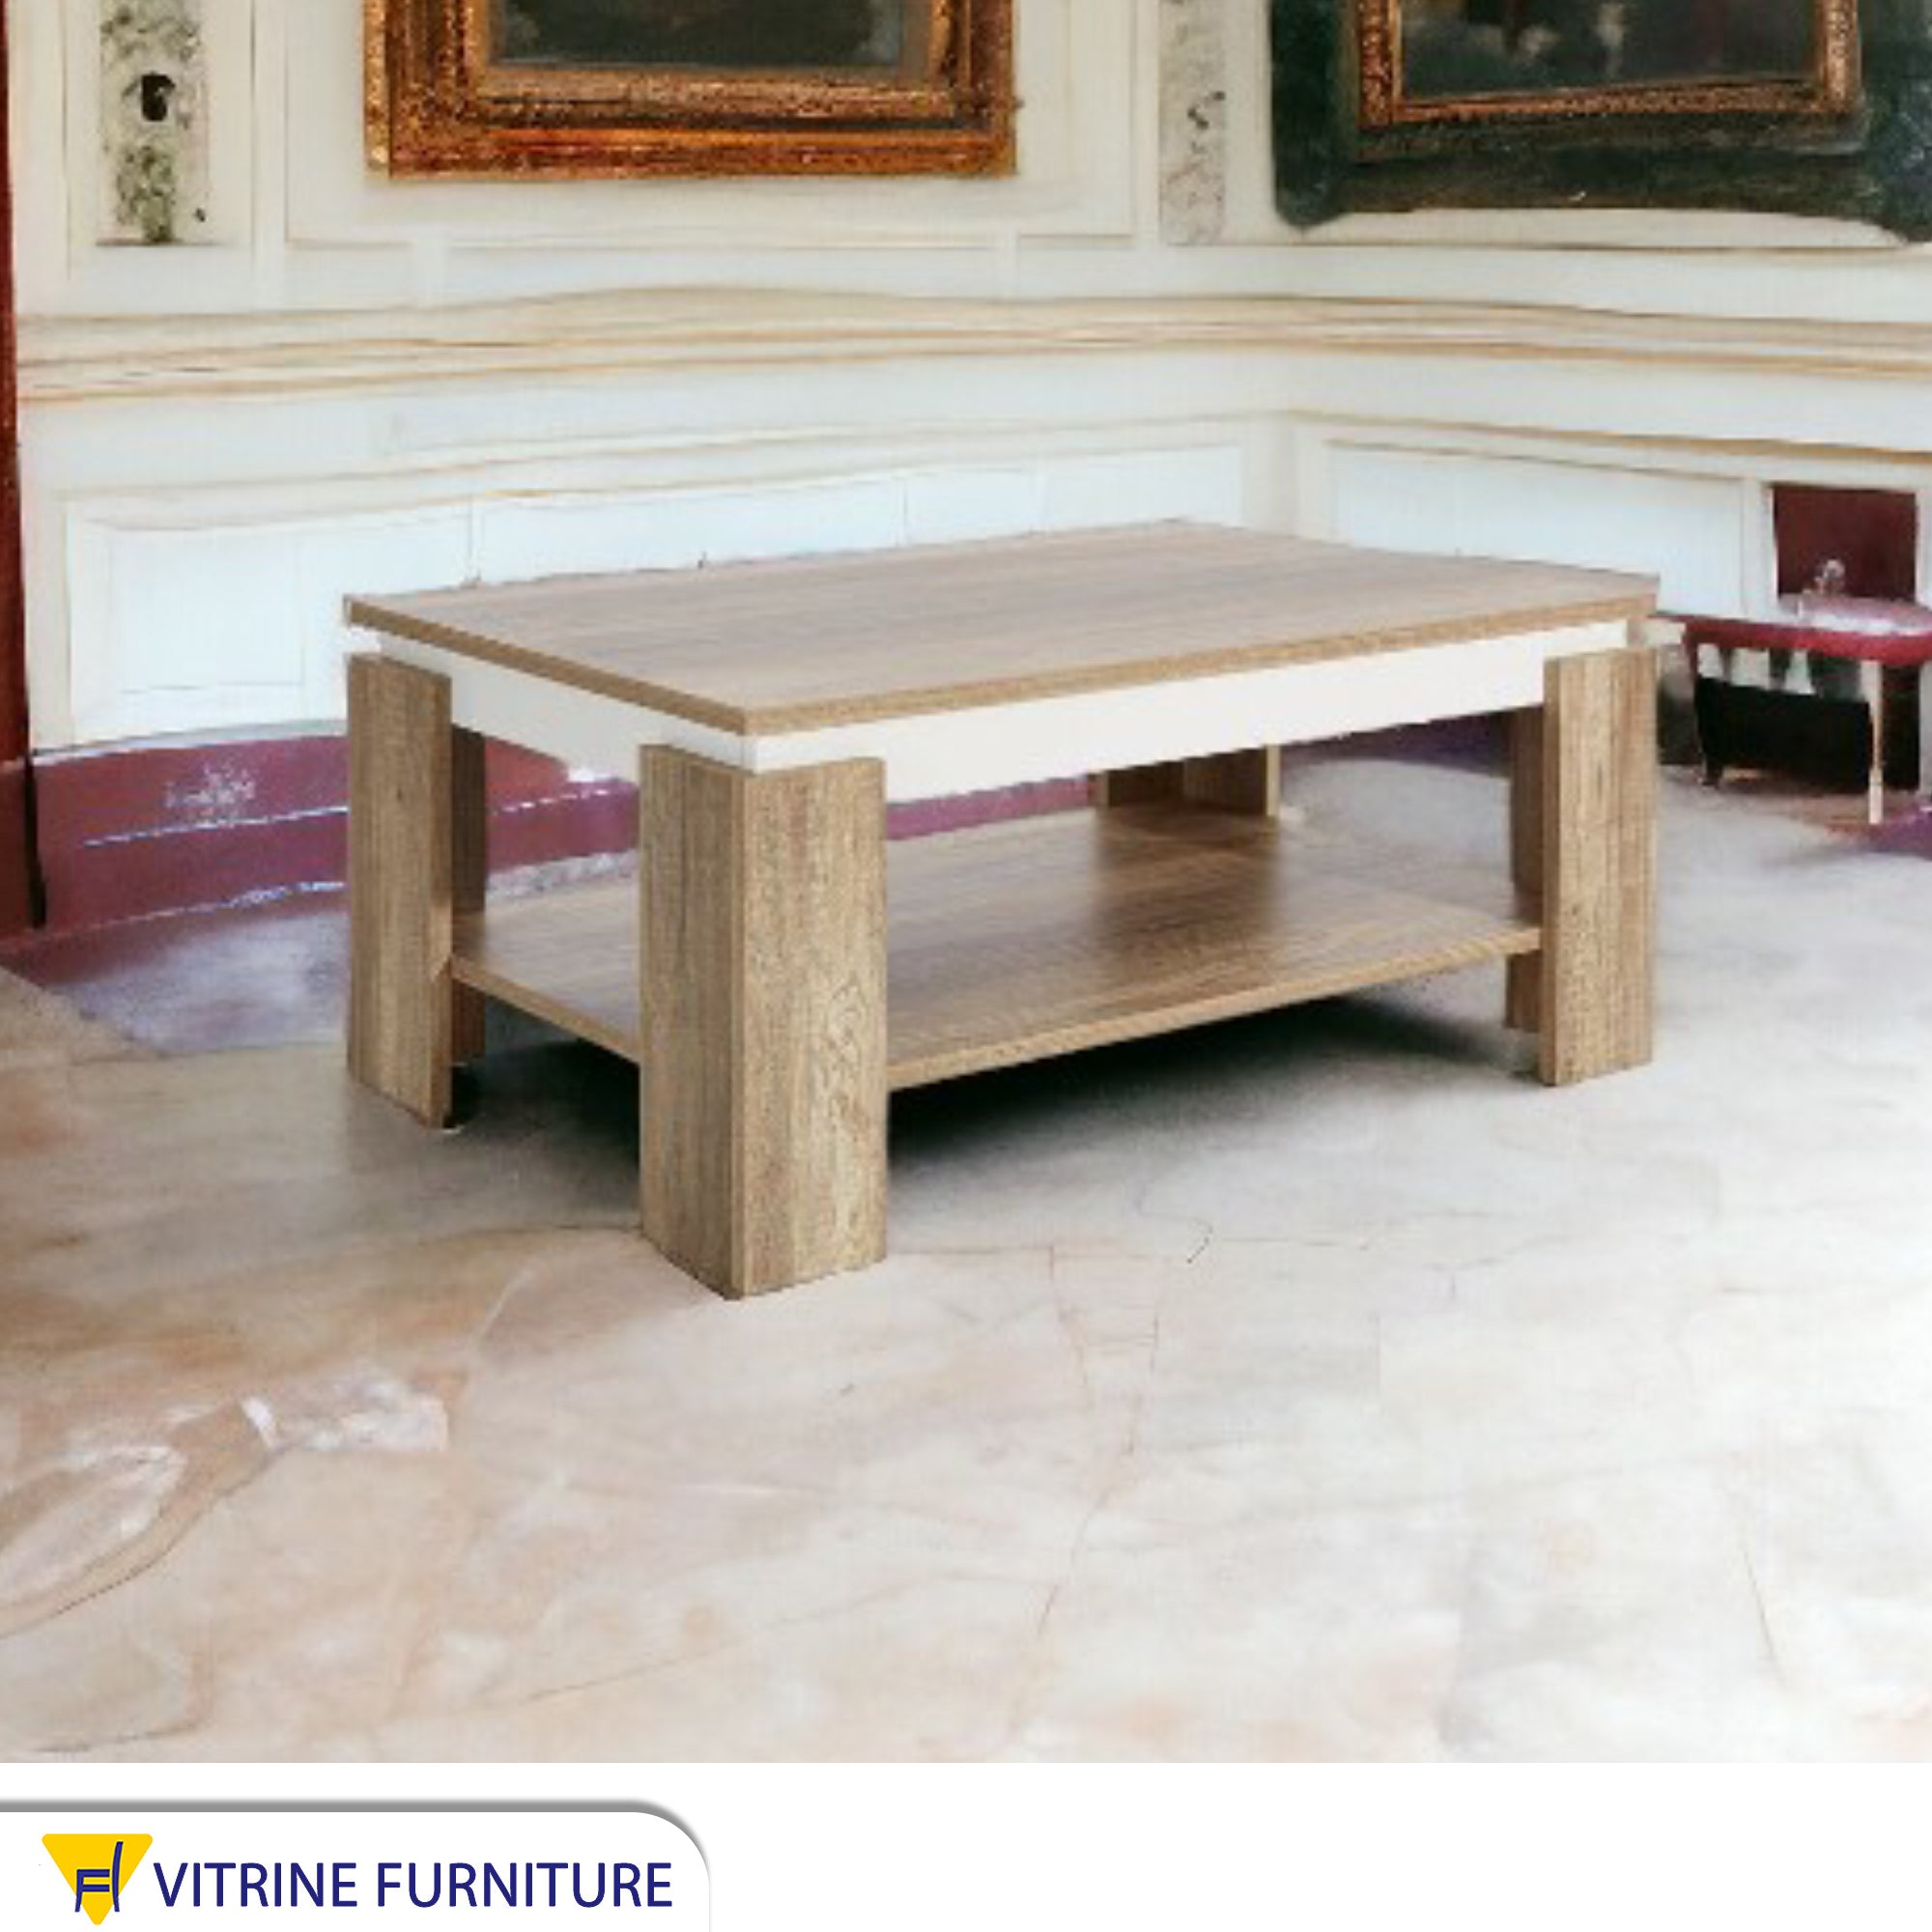 Wooden beige rectangular table